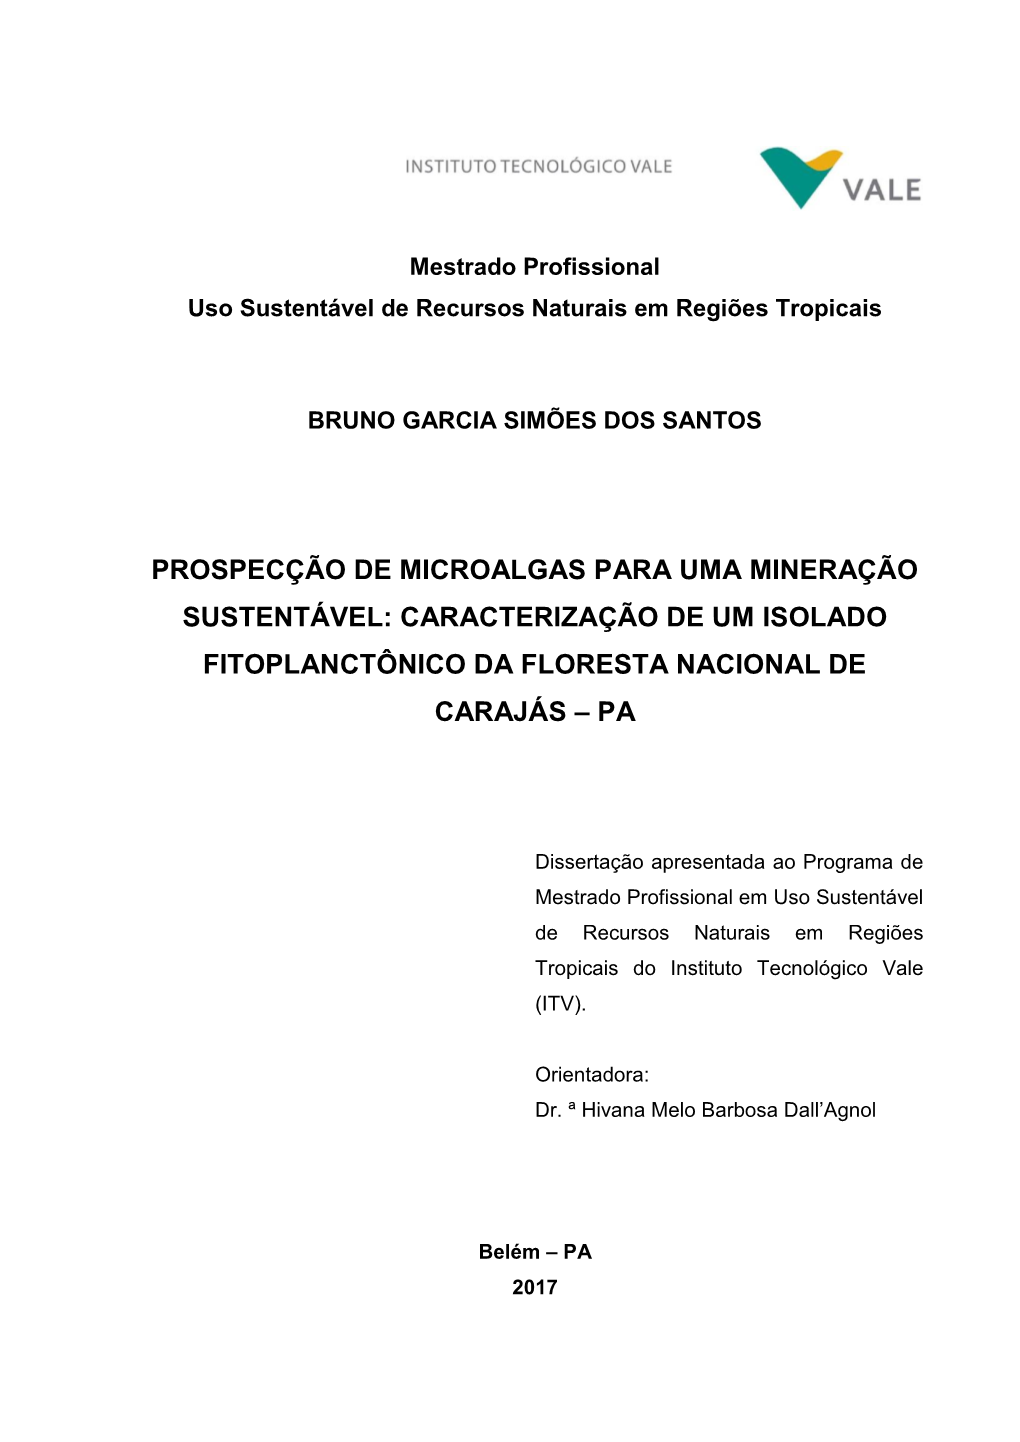 Prospecção De Microalgas Para Uma Mineração Sustentável: Caracterização De Um Isolado Fitoplanctônico Da Floresta Nacional De Carajás – Pa